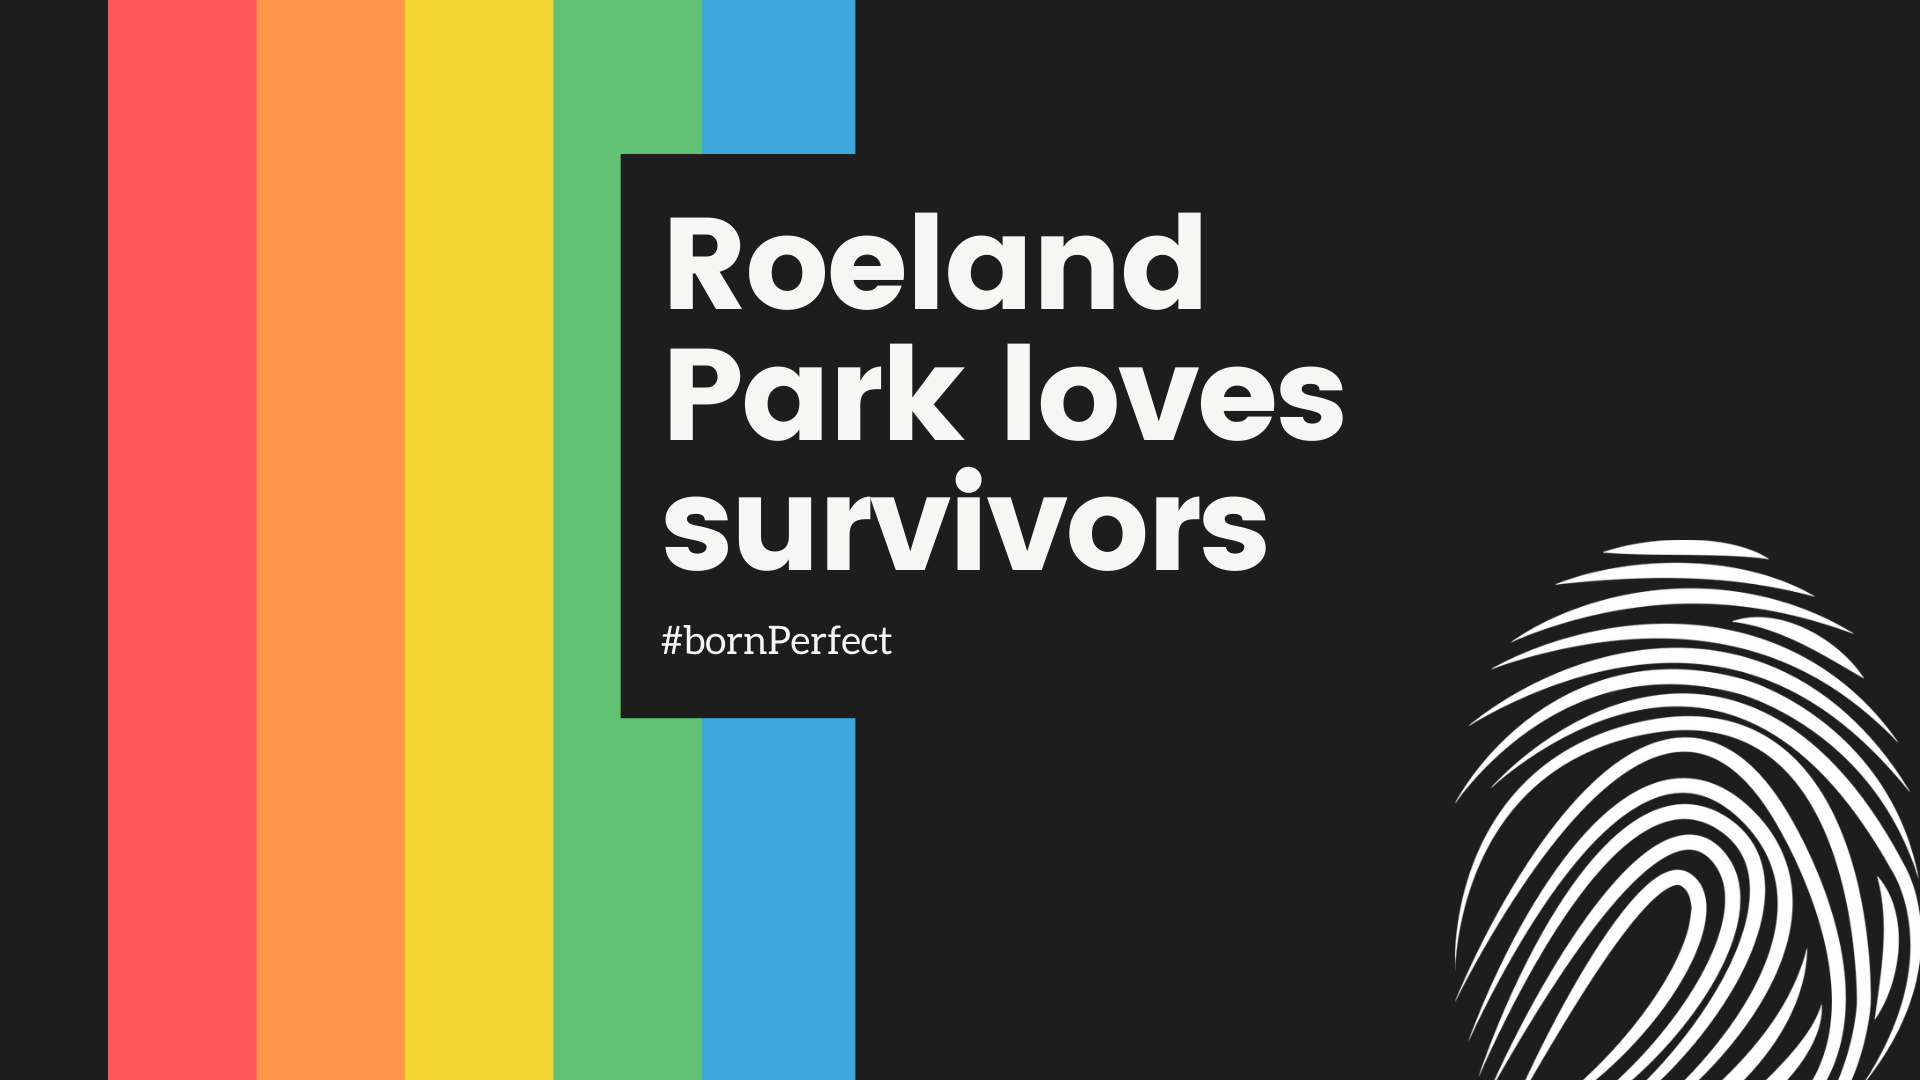 Roeland Park loves survivors